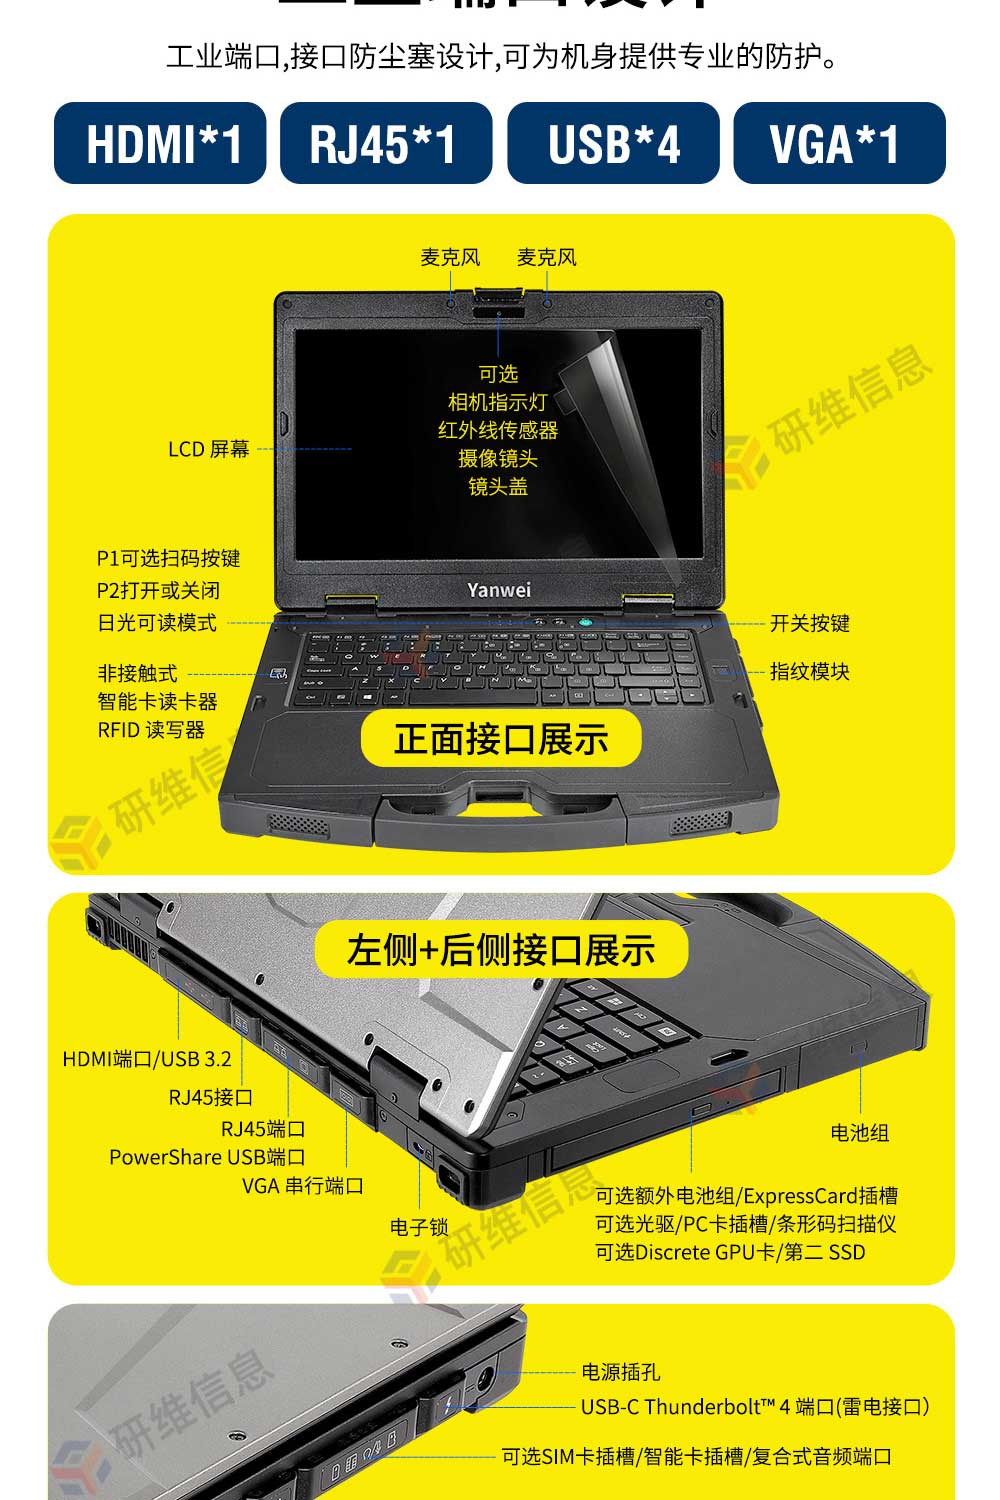 14寸加固筆記本|Windows10系統強固筆記本電腦|軍用筆記本|三防筆記本E475